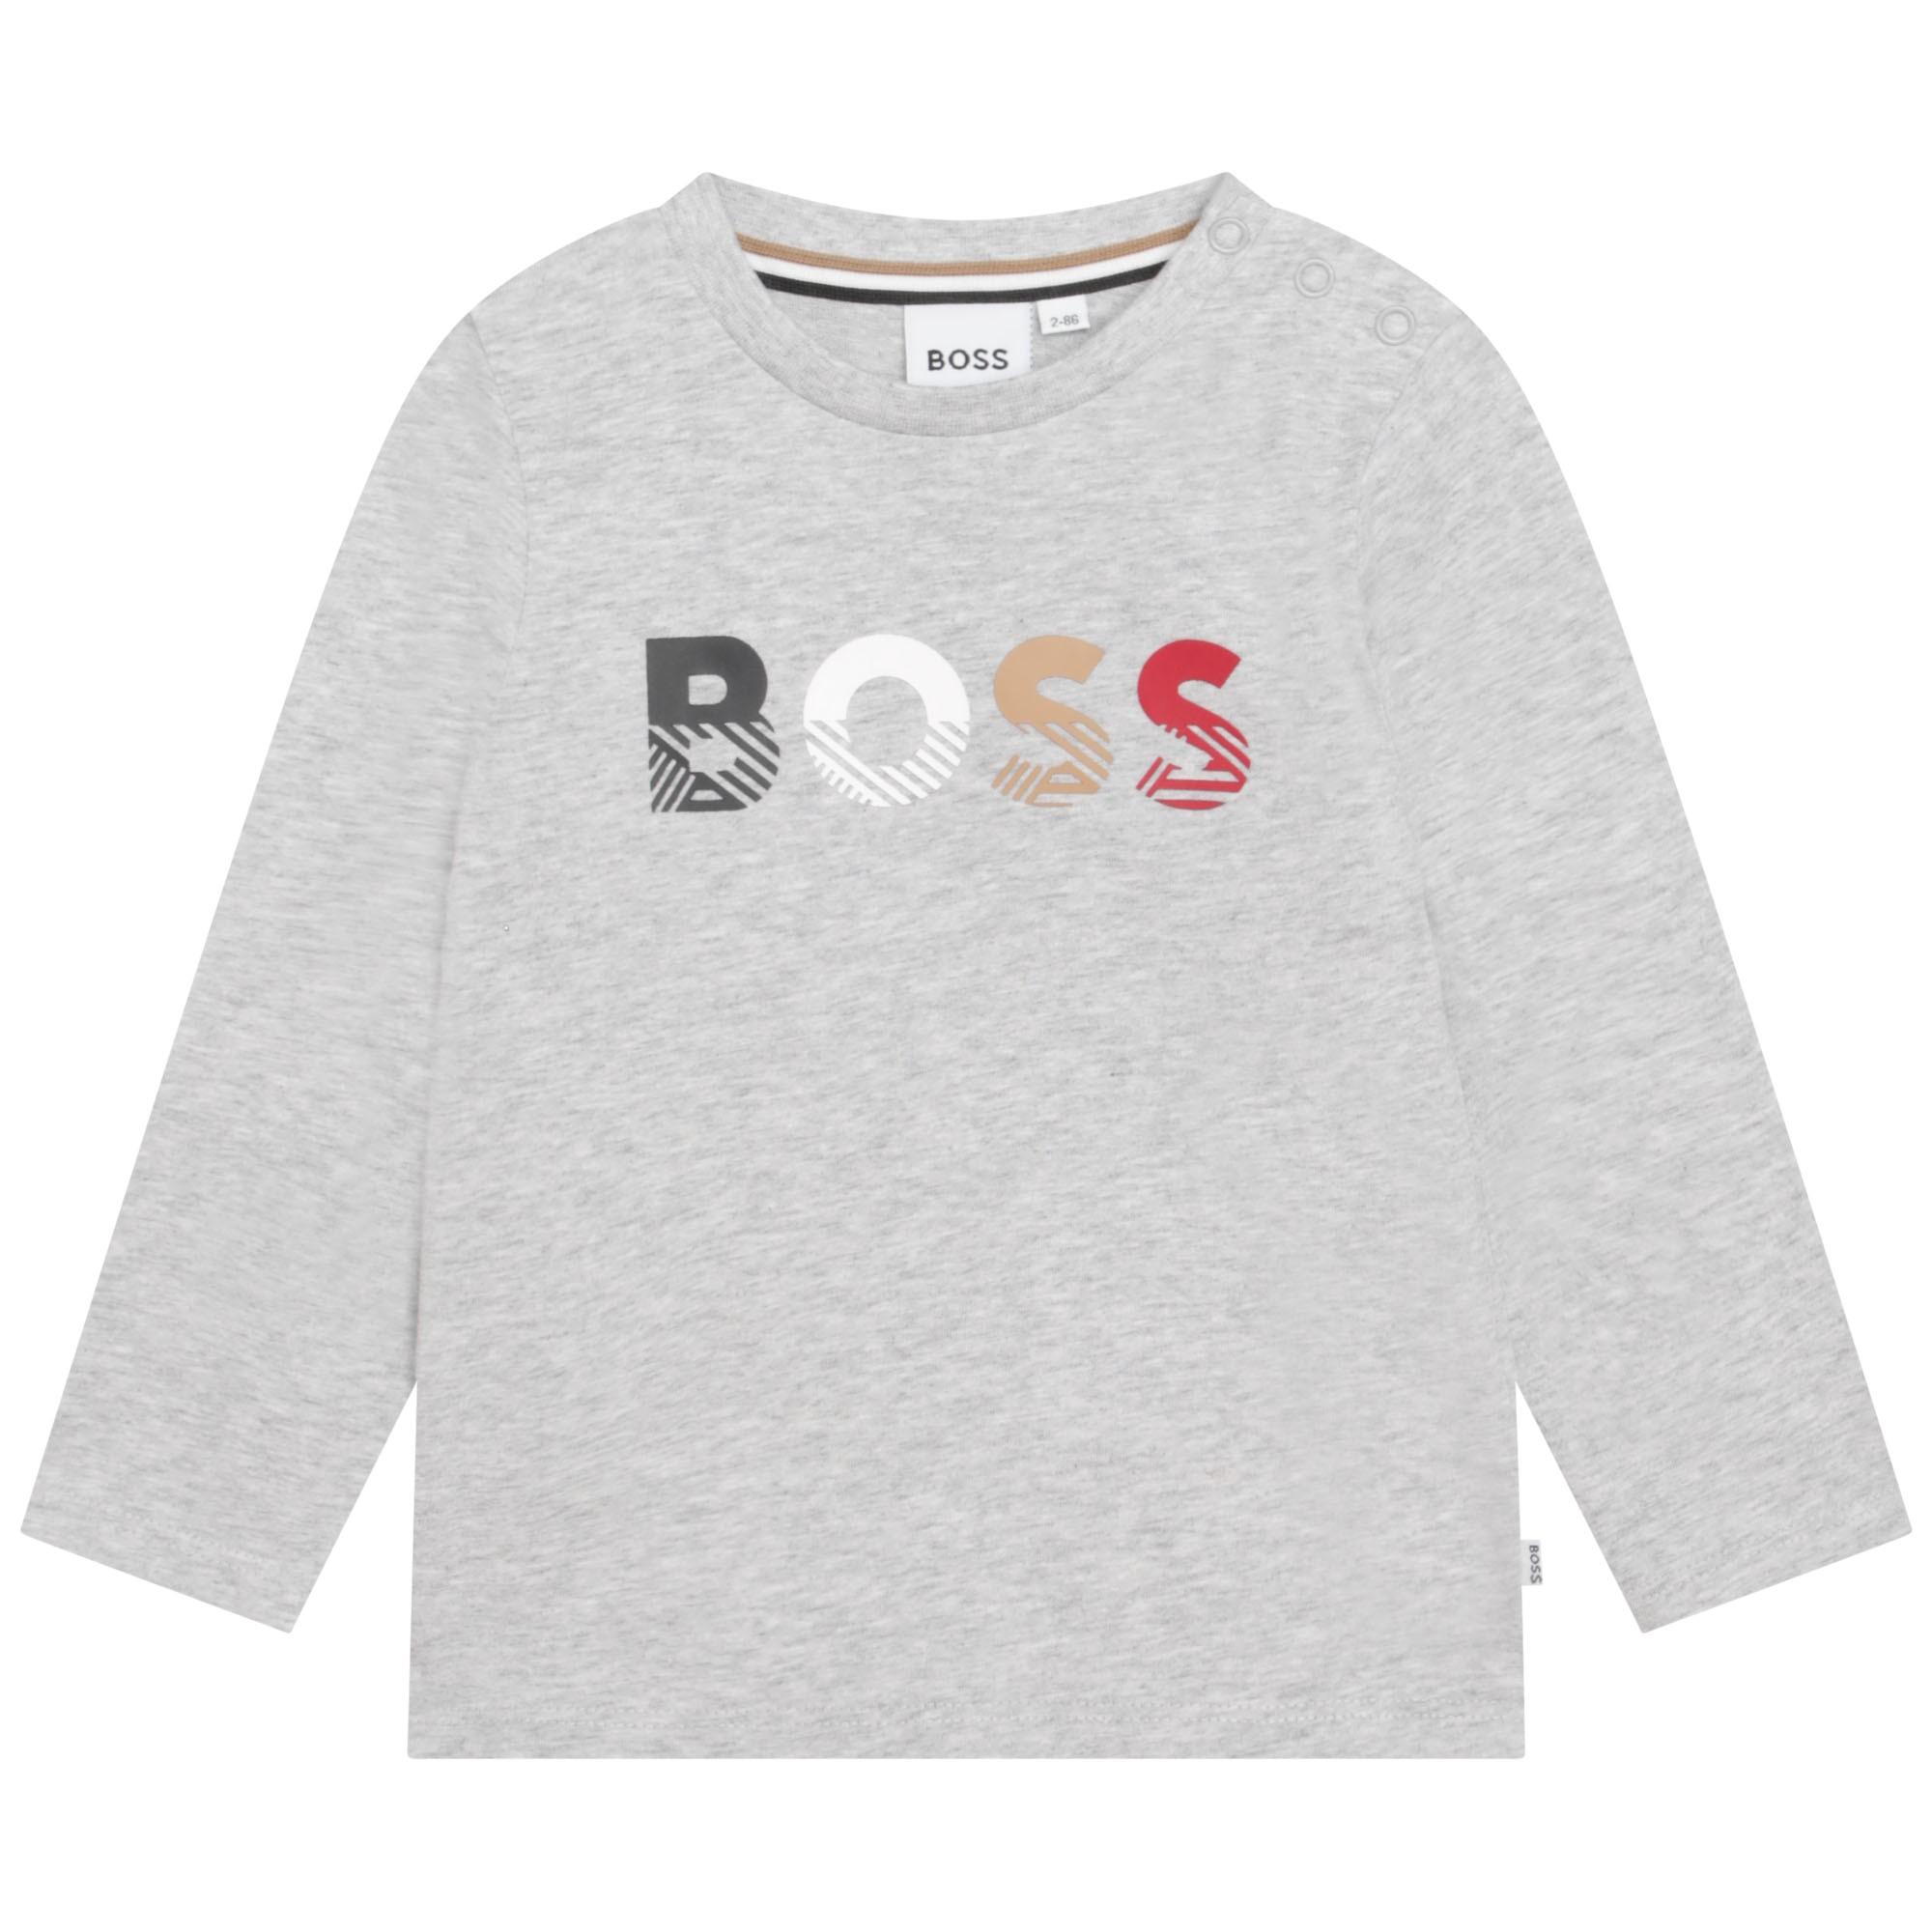 BOSS - T-shirt lange mouwen gris chine